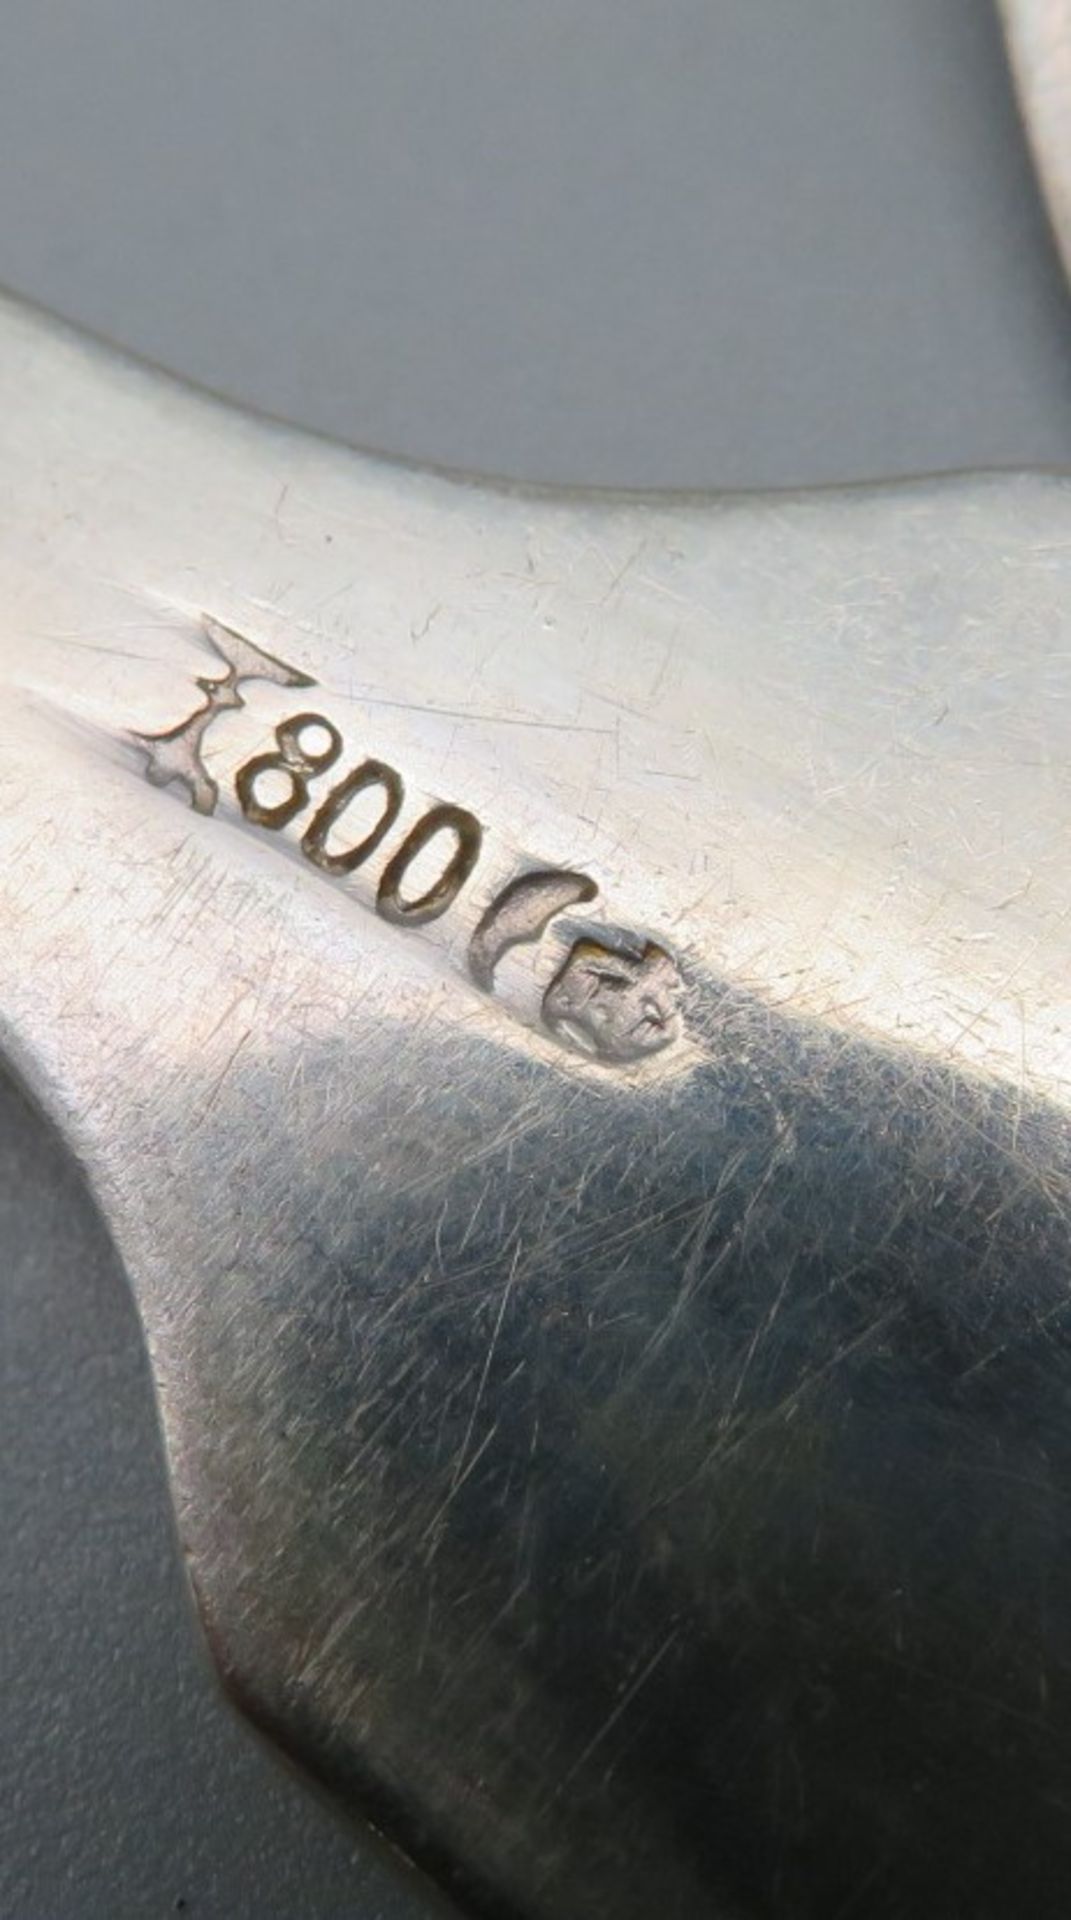 6 Löffel, Koch & Bergfeld Bremen, Spatenform, Silber 800/000, punziert, 350 g, Monogrammgravur "AU" - Image 2 of 2